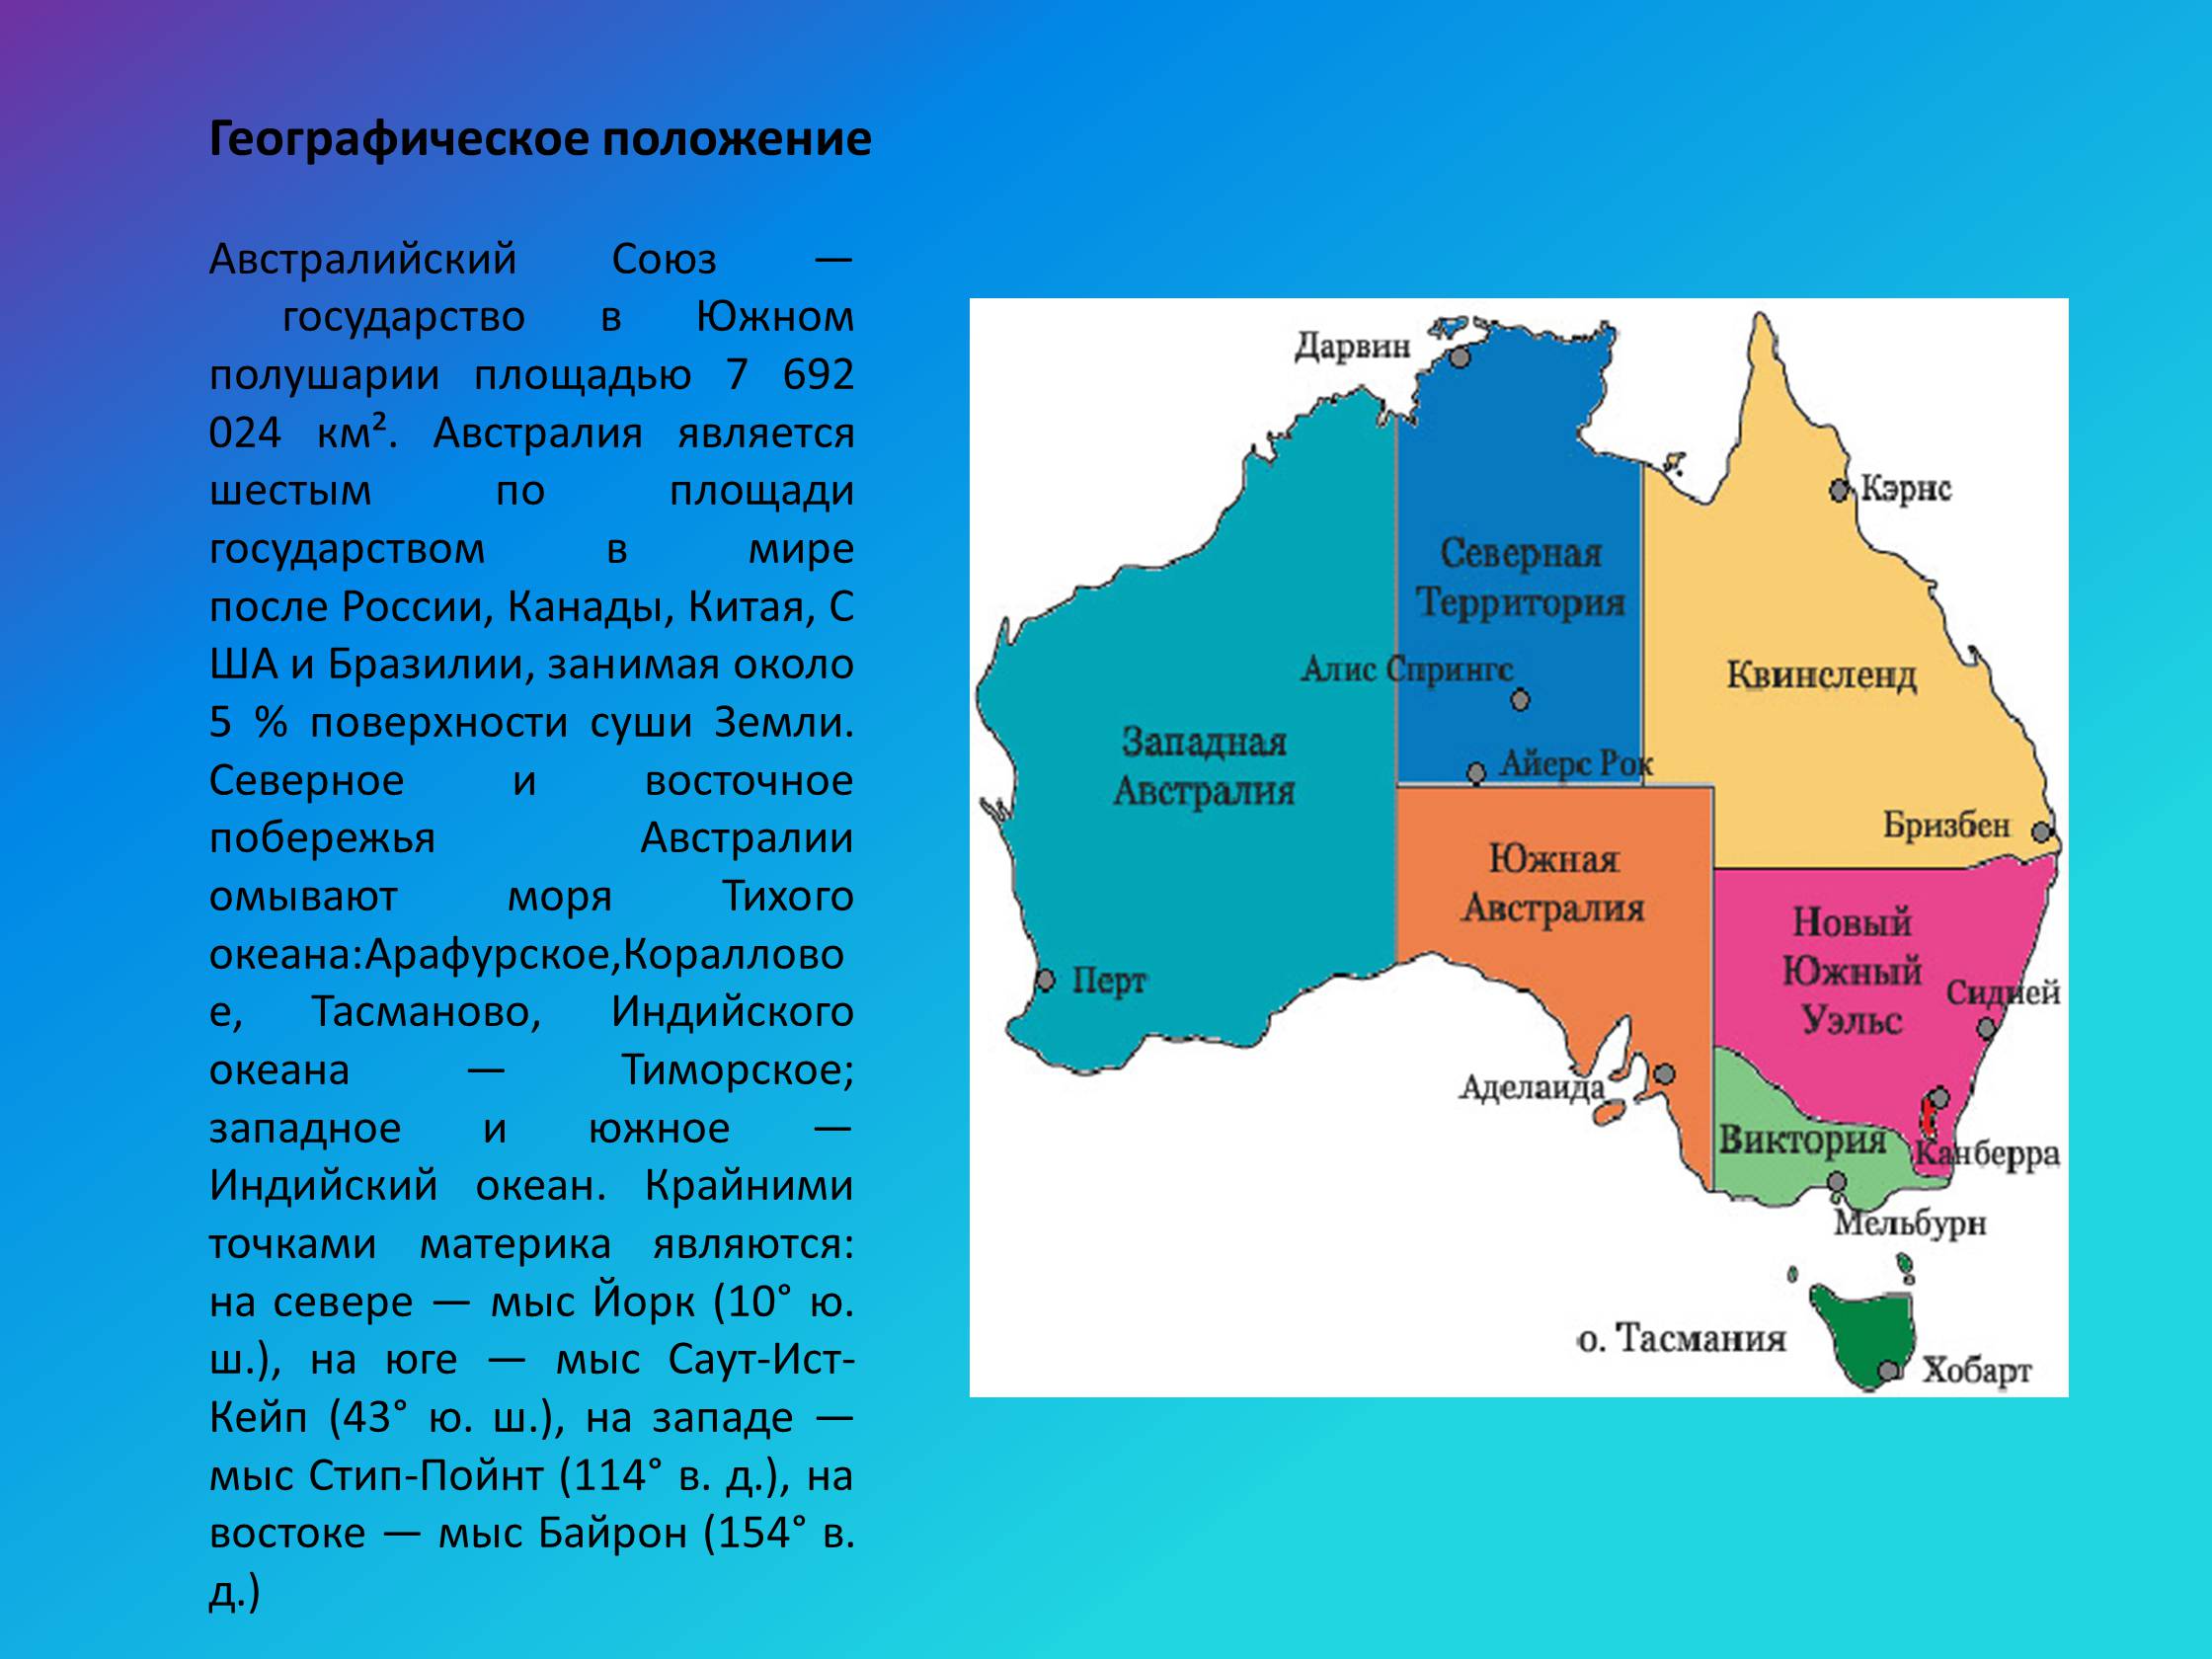 Австралийский союз какие страны. Западная Австралия географическое положение. Расположение австралийского Союза на материке. Географическое положение Австралии и австралийского Союза. Географическое положение Юго Западной Австралии.